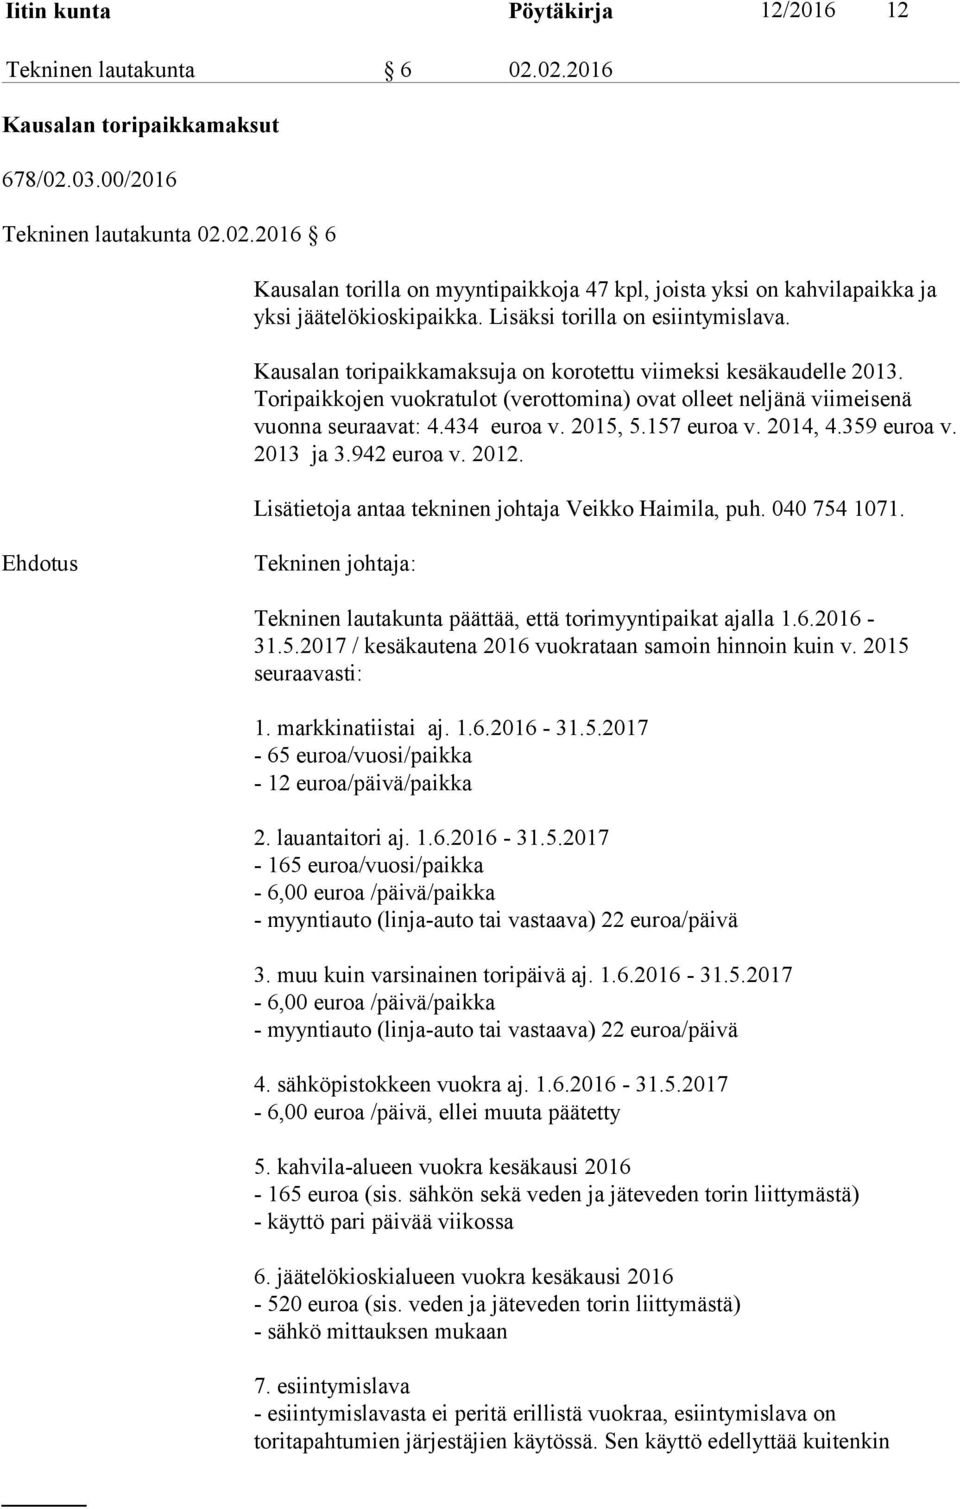 434 euroa v. 2015, 5.157 euroa v. 2014, 4.359 euroa v. 2013 ja 3.942 euroa v. 2012. Lisätietoja antaa tekninen johtaja Veikko Haimila, puh. 040 754 1071.